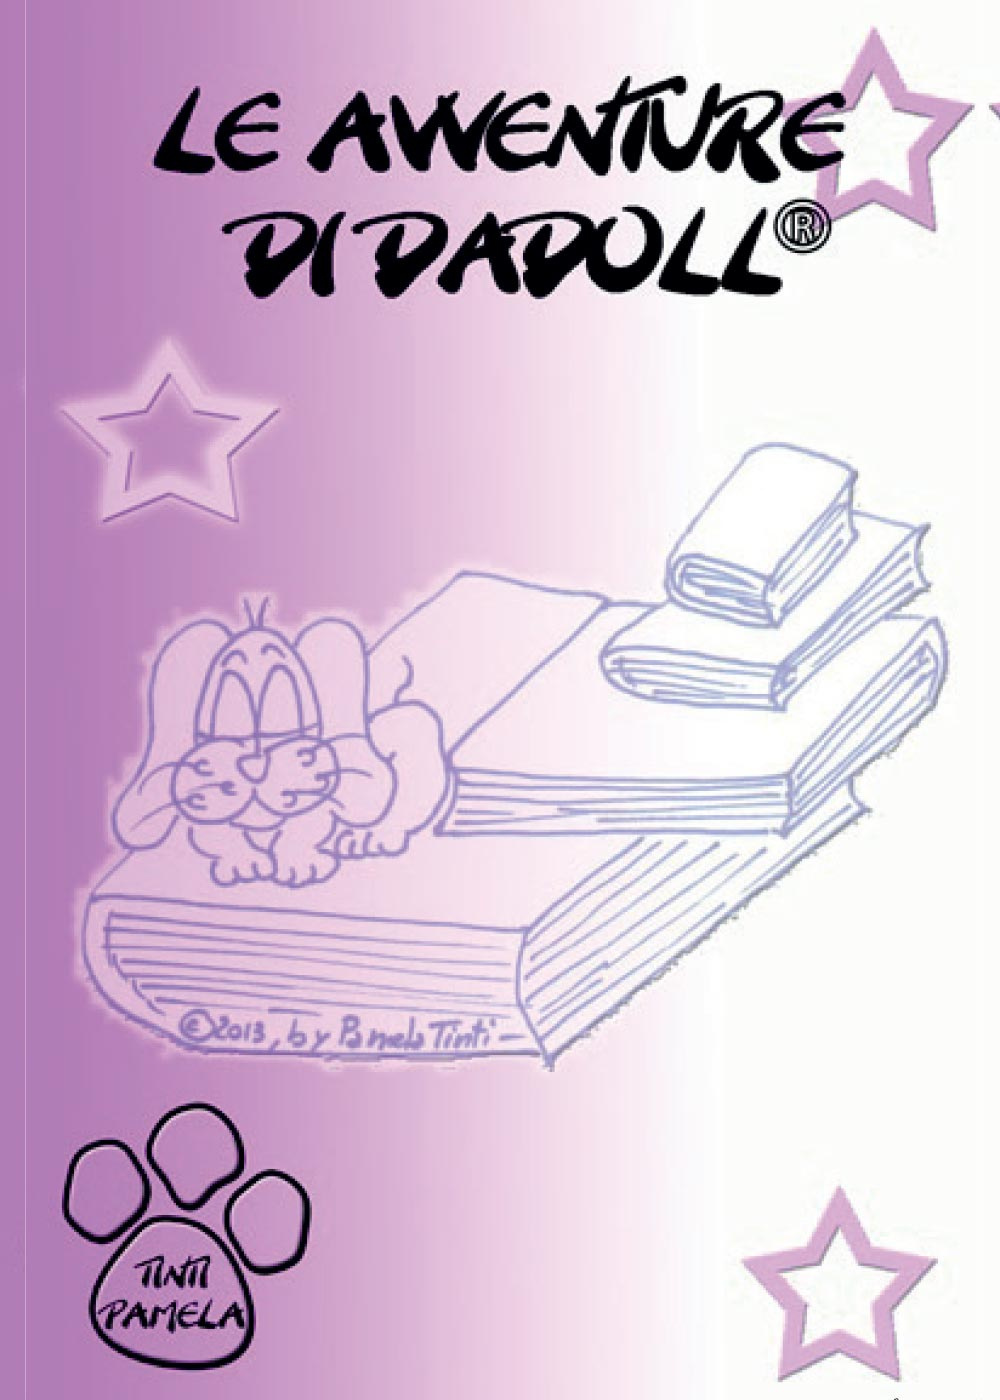 Le avventure di Dadoll®. Ediz. illustrata